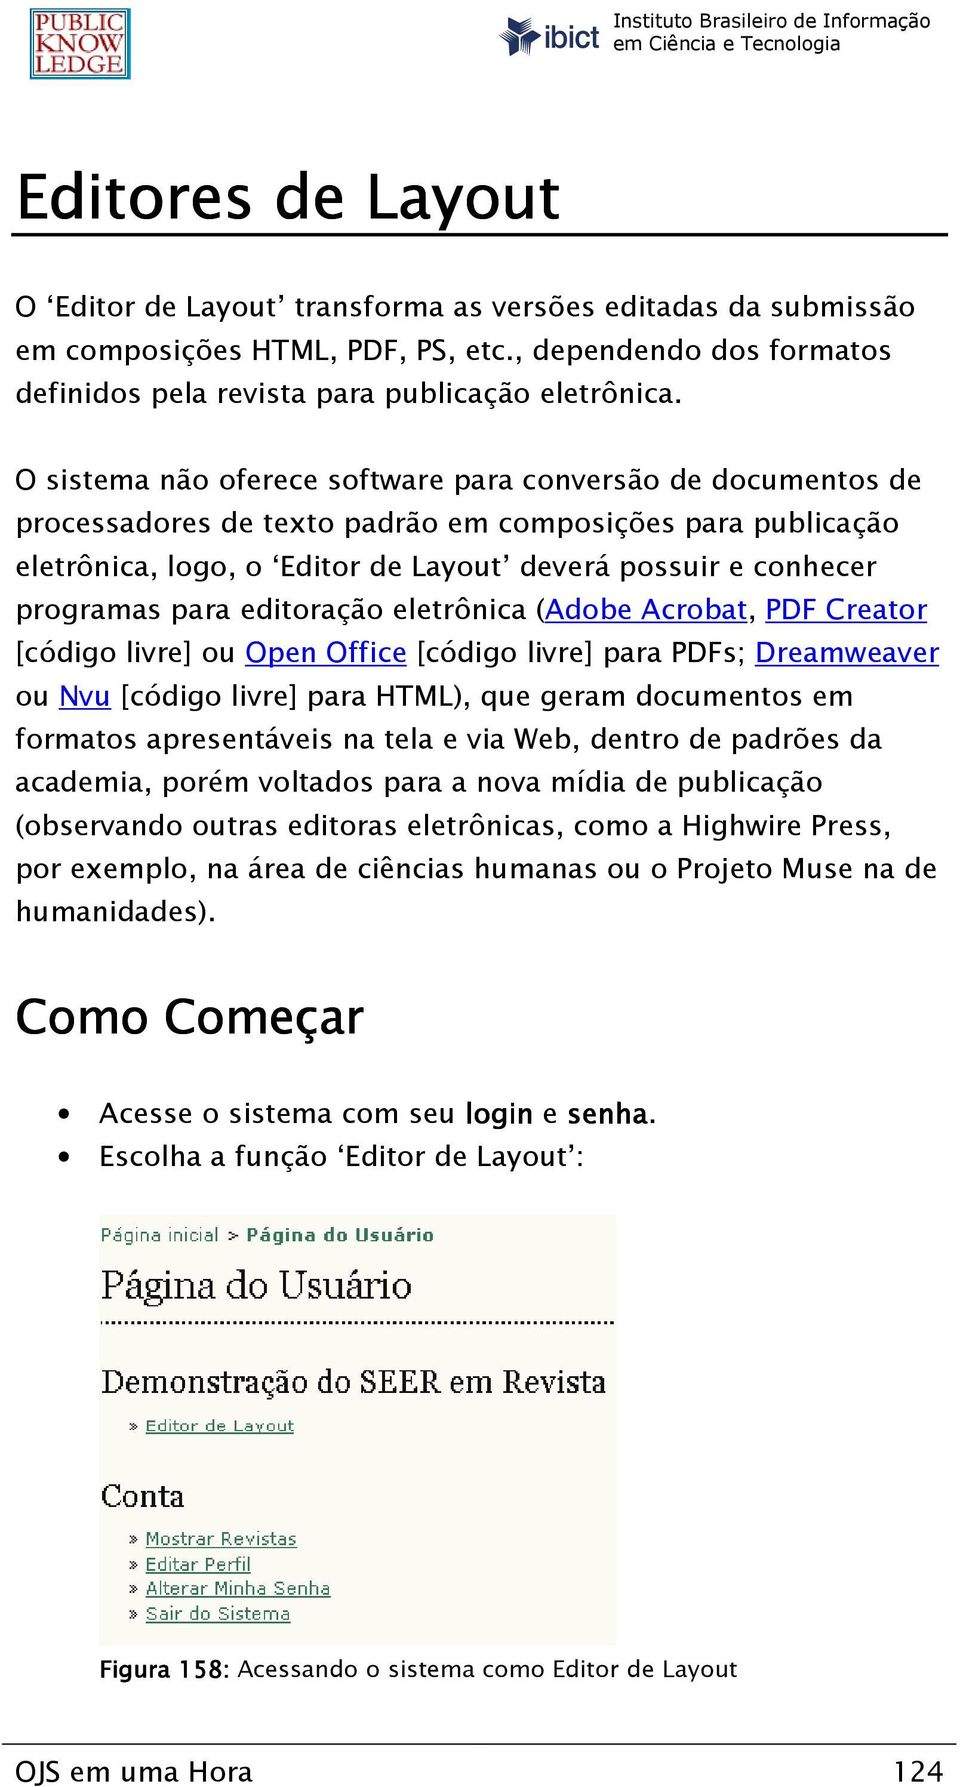 para editoração eletrônica (Adobe Acrobat, PDF Creator [código livre] ou Open Office [código livre] para PDFs; Dreamweaver ou Nvu [código livre] para HTML), que geram documentos em formatos